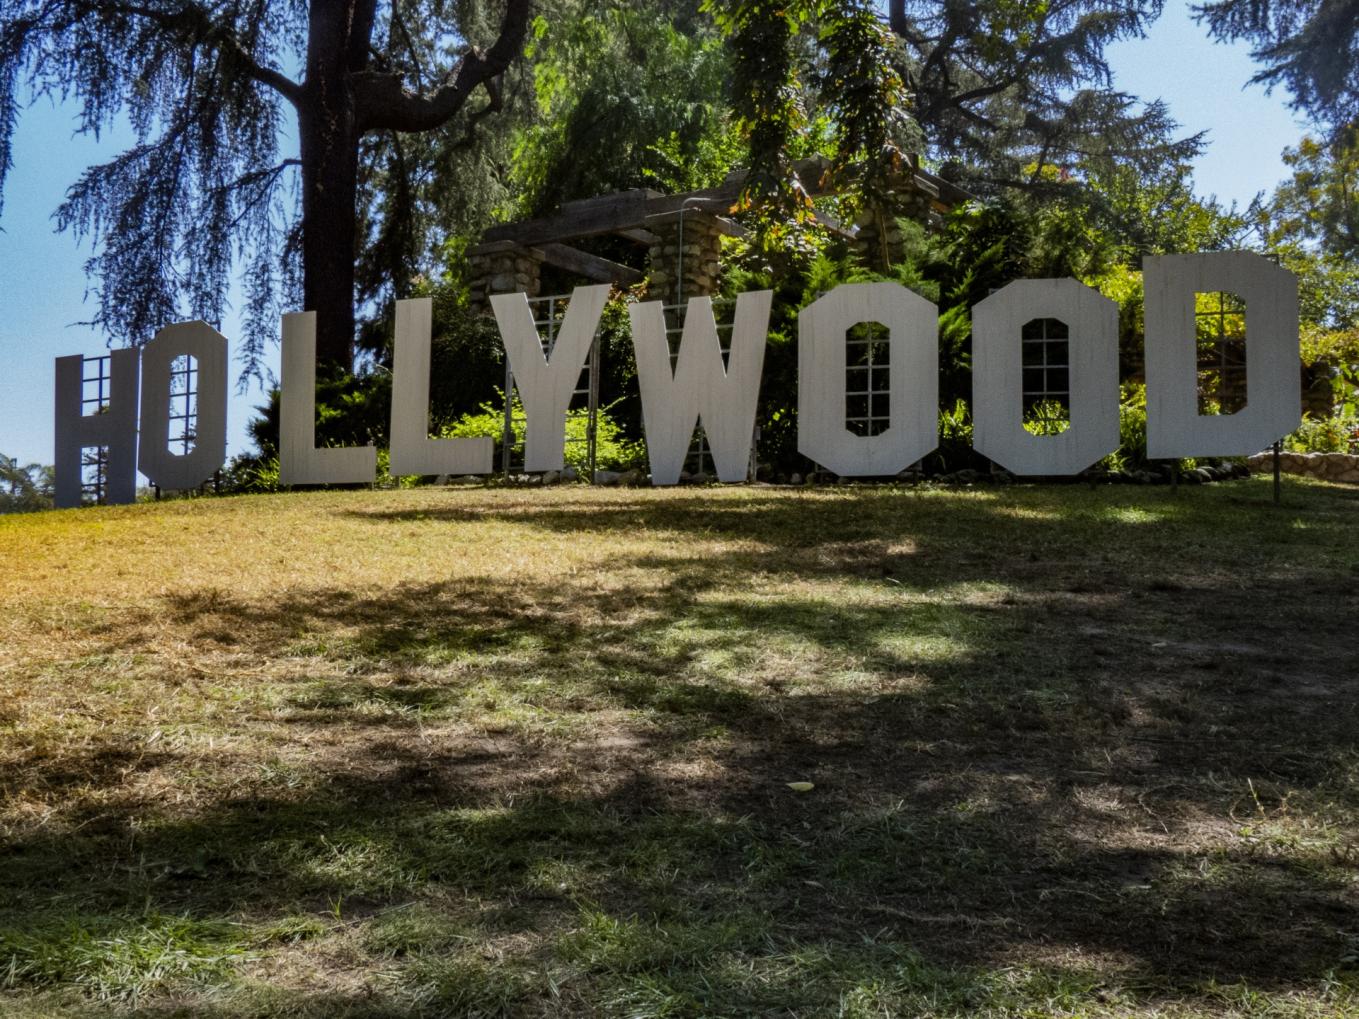 Quali sono le caratteristiche più esclusive delle case delle celebrità a Hollywood?